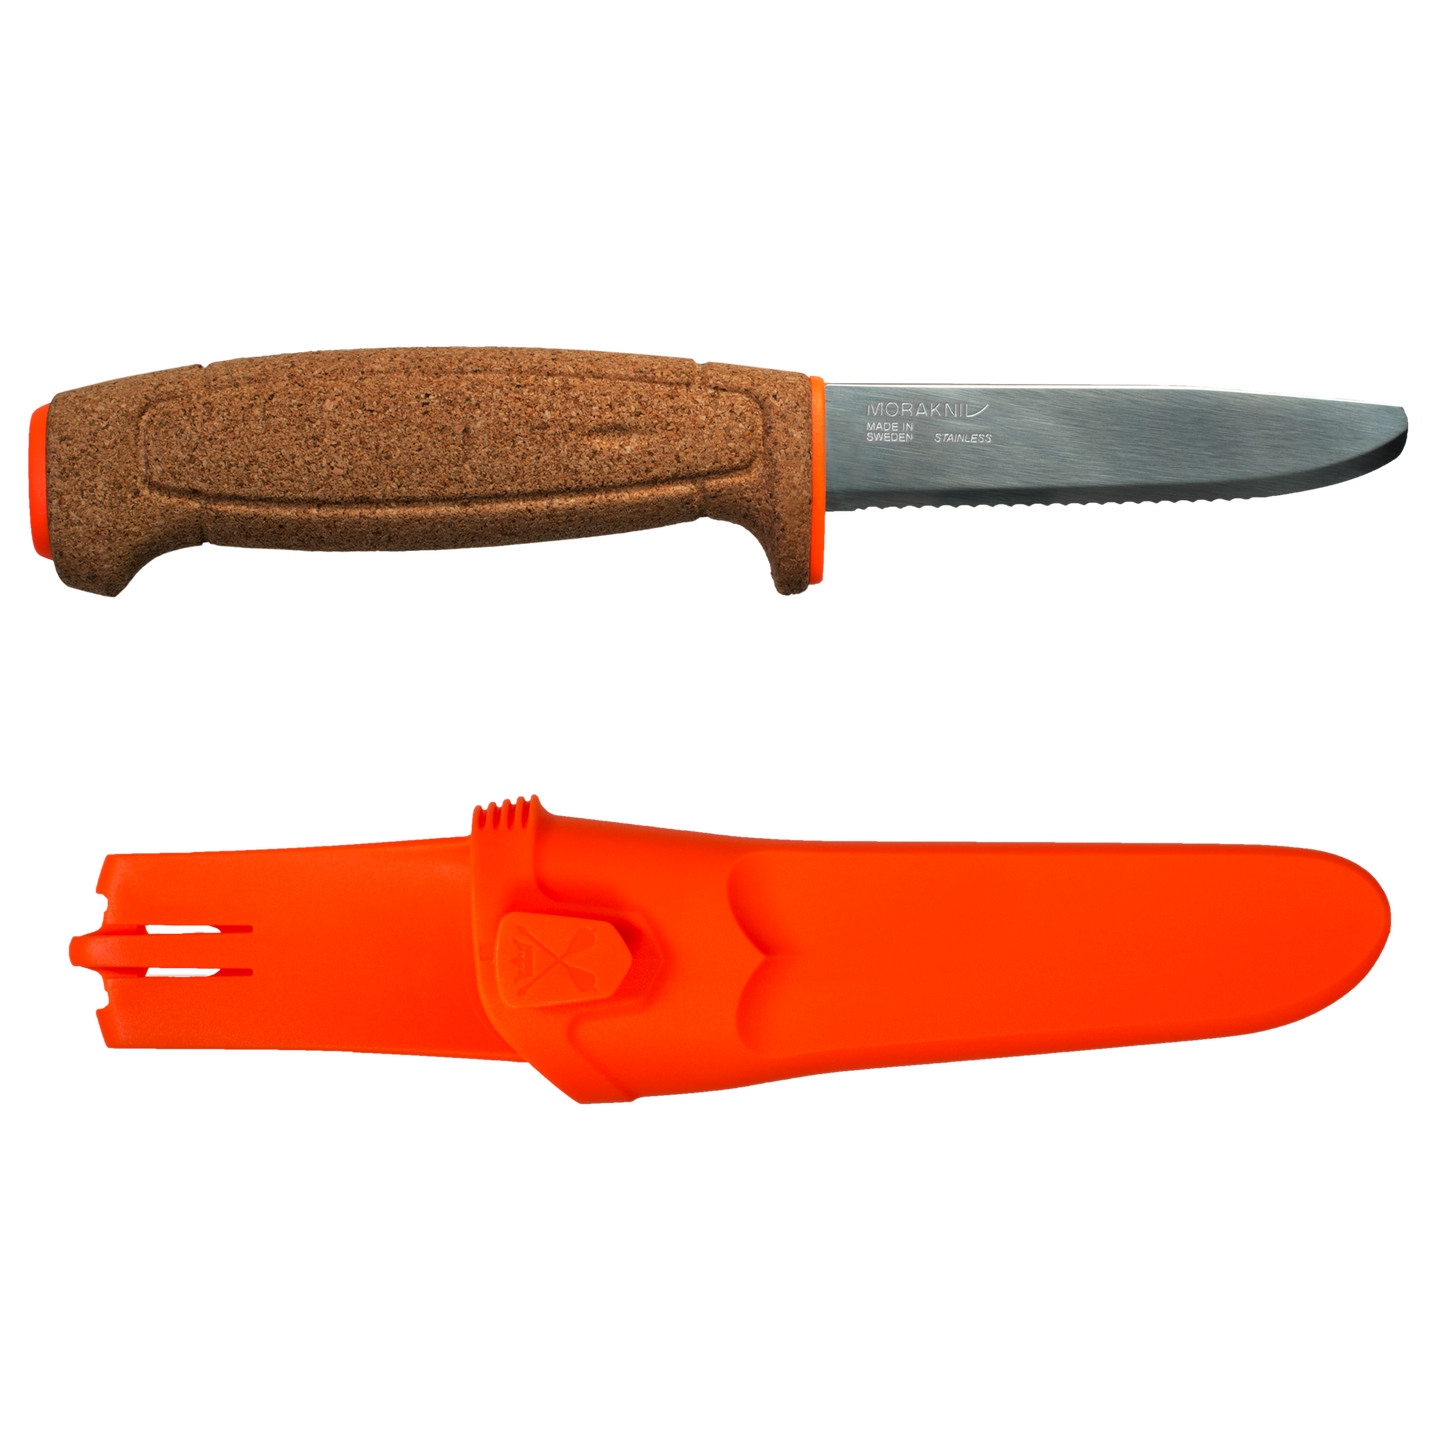 Morakniv Floating Knife